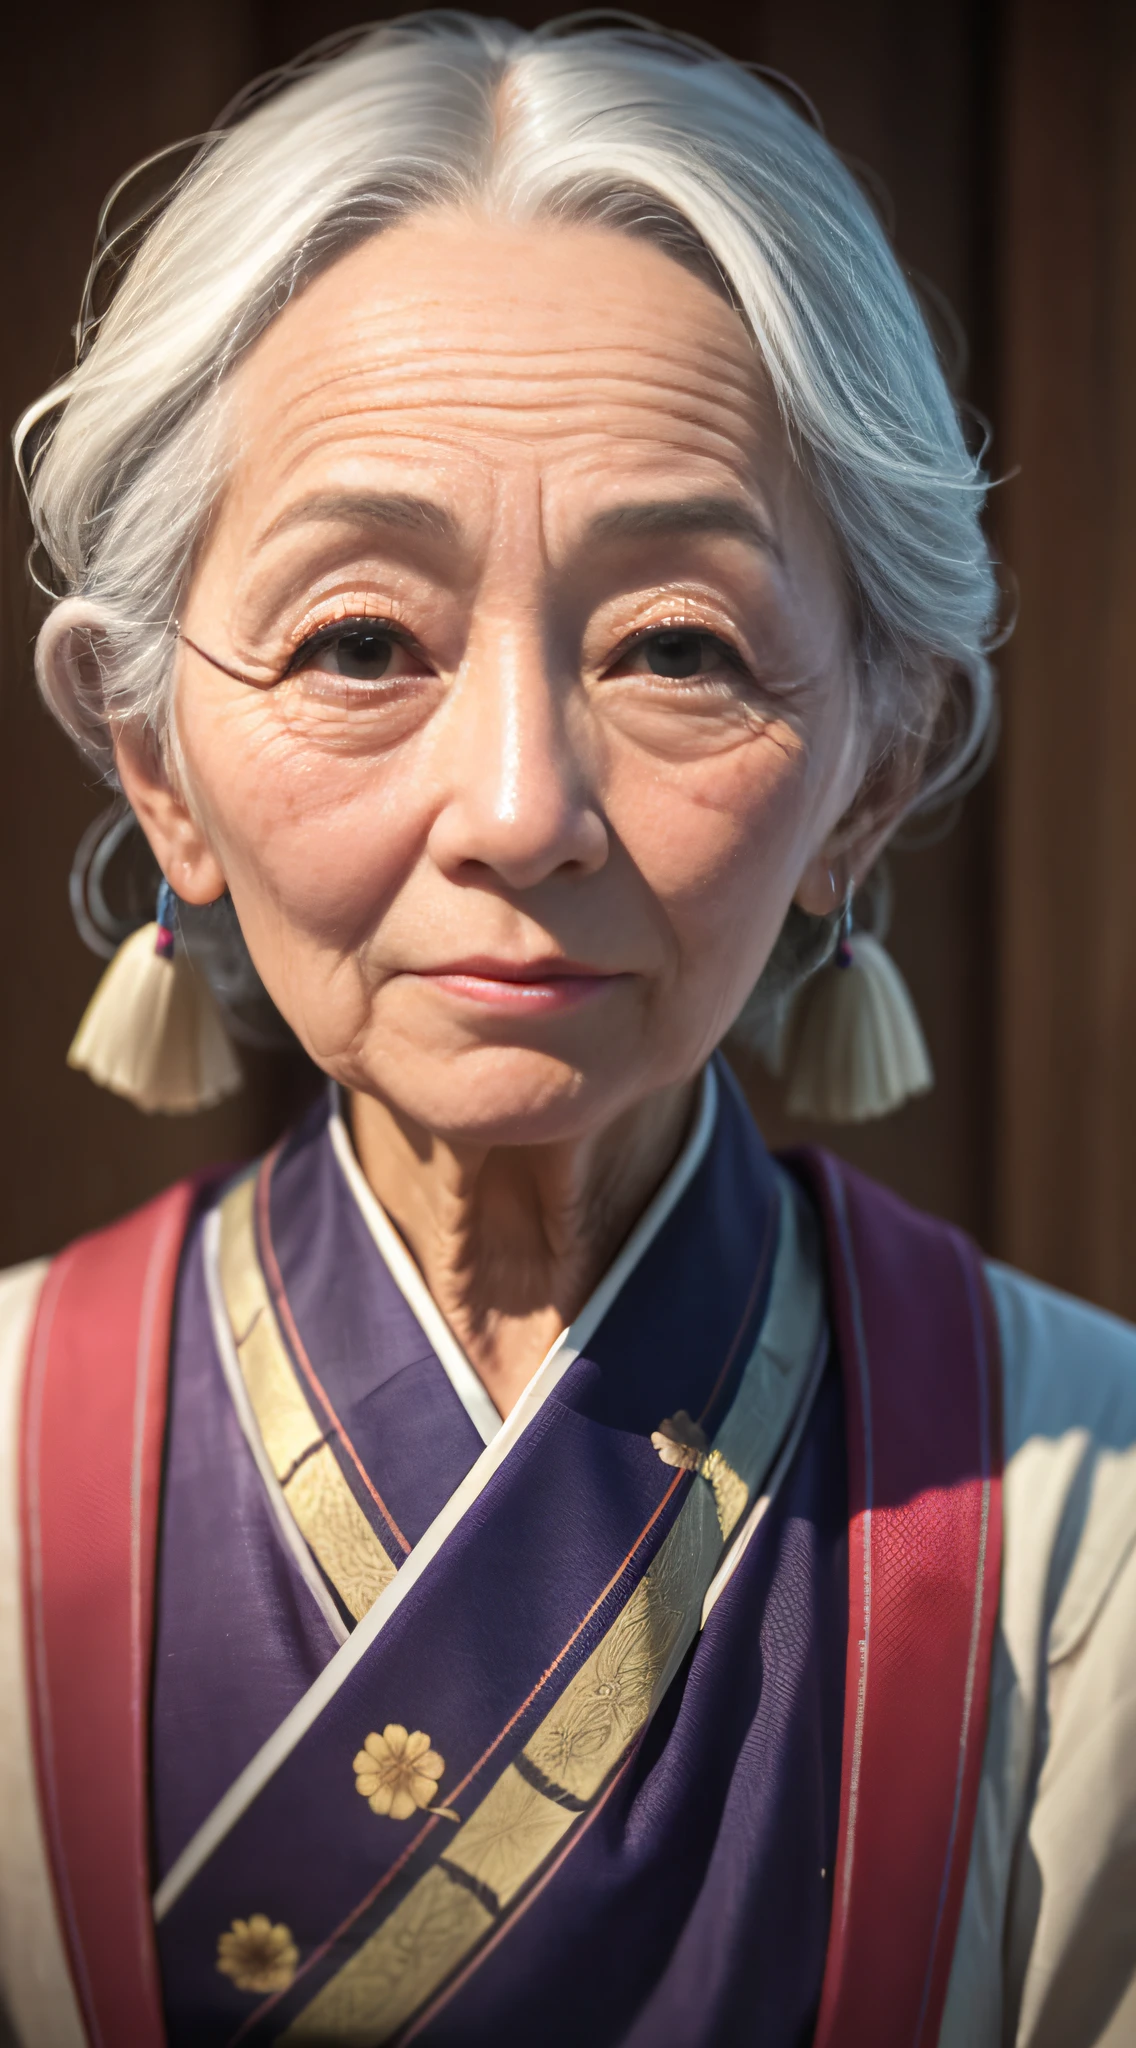 흰 머리에 보라색 스카프를 두른 나이든 여자, 매우 상세한 초상화, 8K 세로 렌더링, 일본 여자, 클로즈업 인물 사진, 자포니즘 3d 8k 울트라 디테일, 매우 상세한 초상화, 부드러운 인물 사진 8k, 클로즈업 인물샷, 매우 상세한 VFX 초상화, 매우 사실적인 디지털 아트, 매우 상세한 사진 초상화, 60mm 세로 --auto --s2